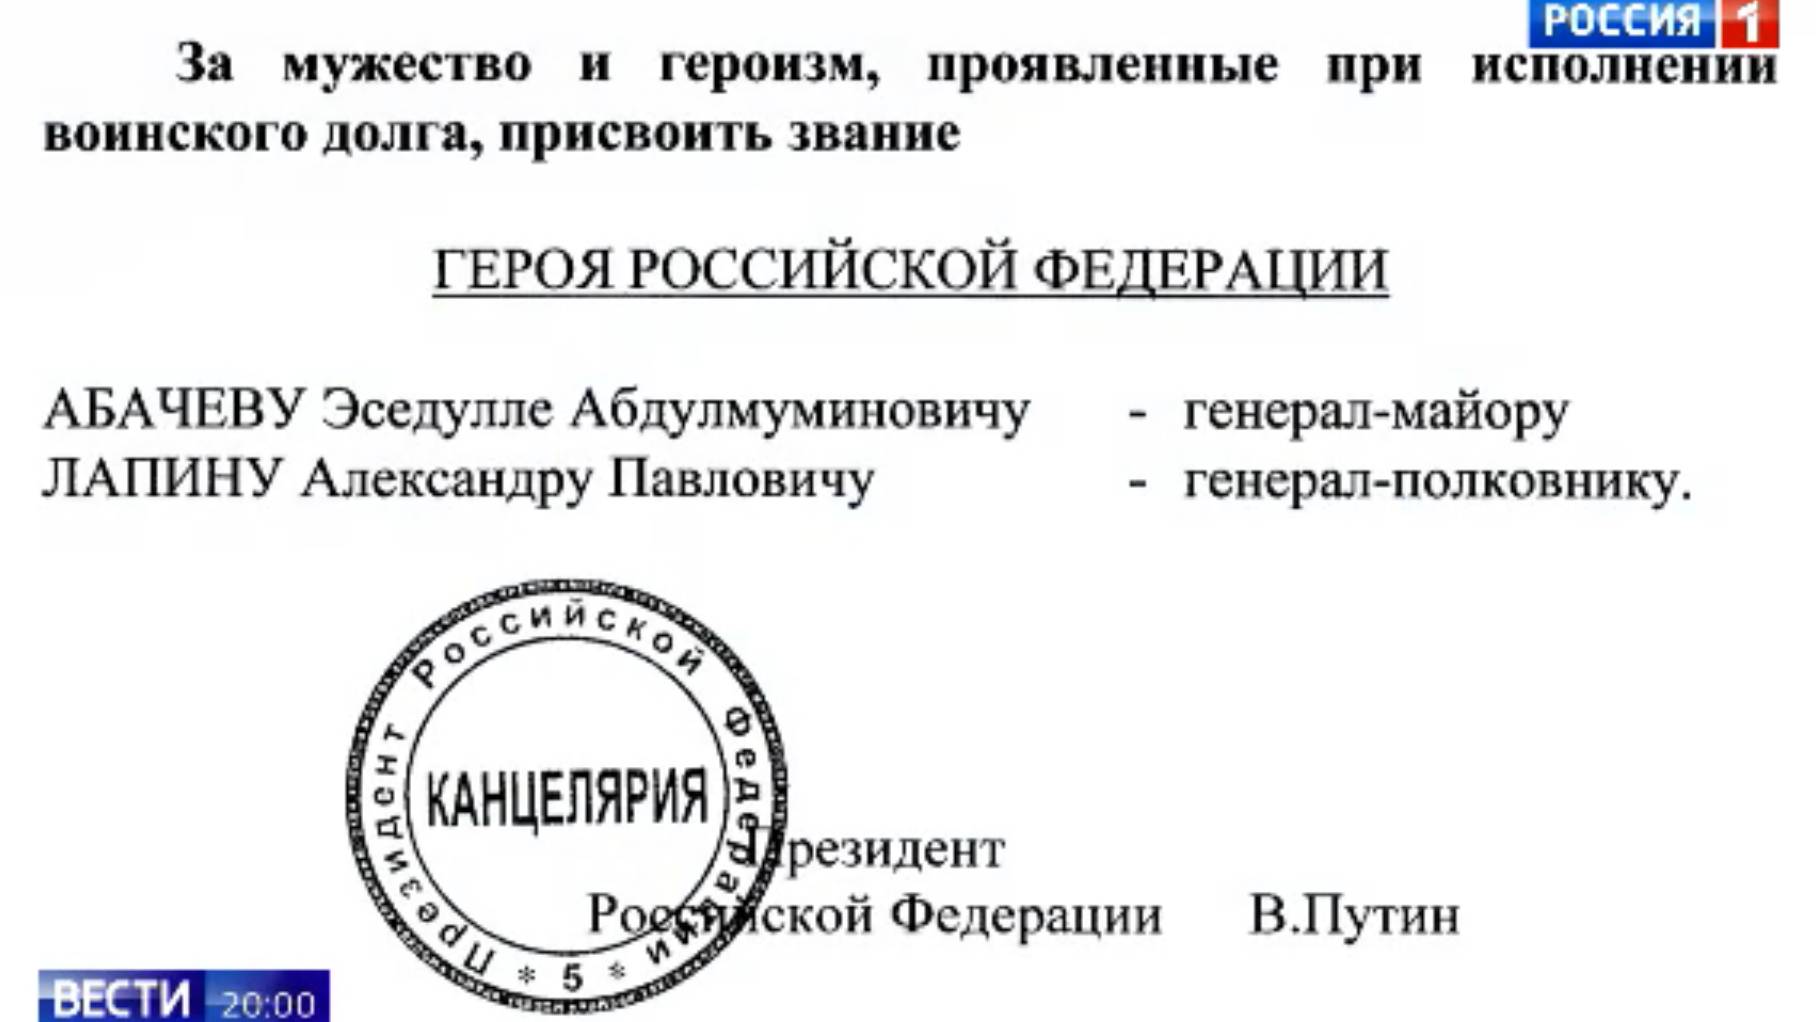 Rosyjski dokument z pieczęcią stwoerdzający pryzznanie tytułu Bohatera Rosji